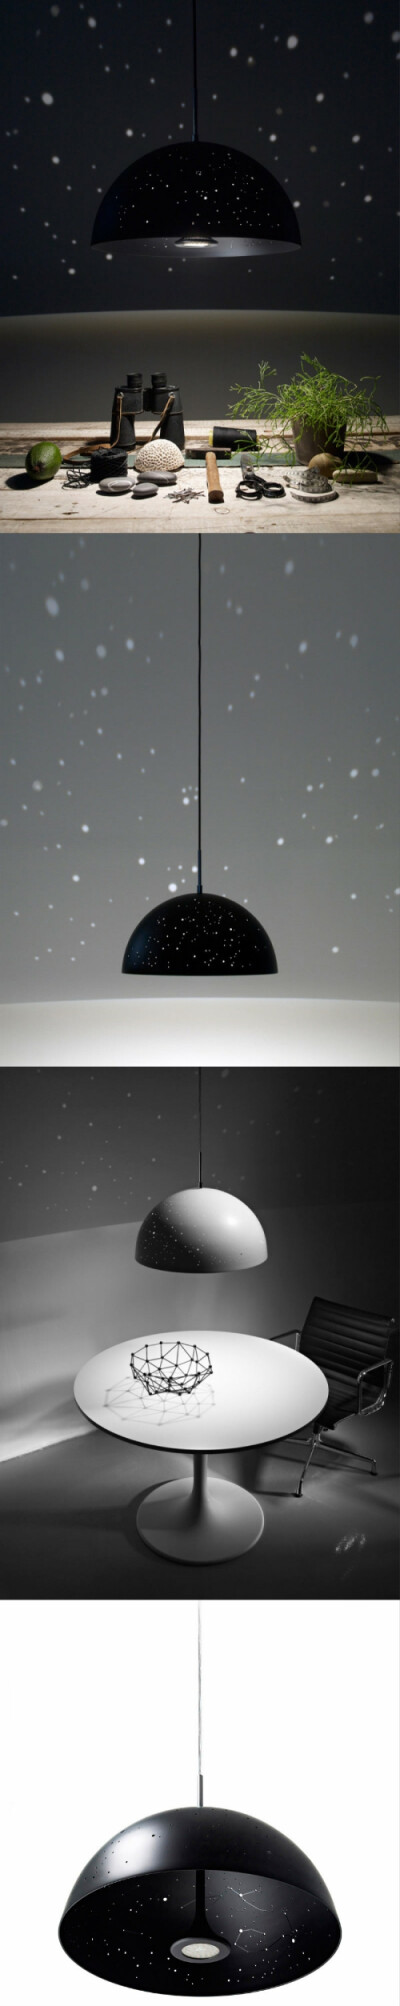 匈牙利首都布达佩斯的平面设计师Anna Farkas和室内设计师Miklós Batisz联袂推出的一系列吊灯产品，灵感源于满天星。